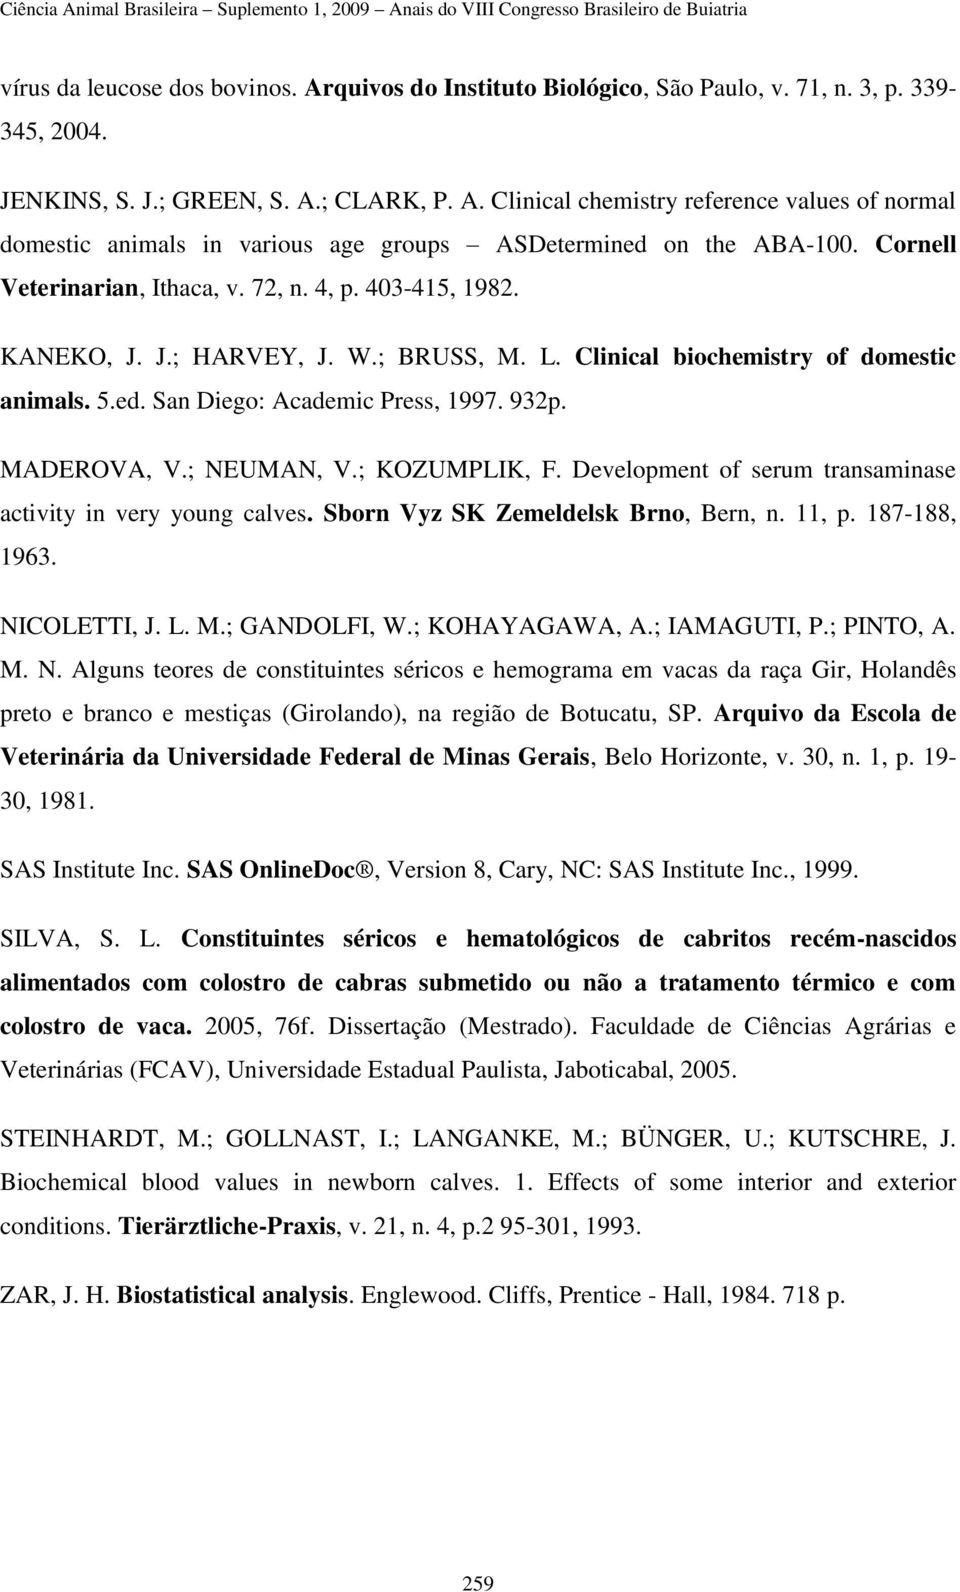 MADEROVA, V.; NEUMAN, V.; KOZUMPLIK, F. Development of serum transaminase activity in very young calves. Sborn Vyz SK Zemeldelsk Brno, Bern, n. 11, p. 187-188, 1963. NICOLETTI, J. L. M.; GANDOLFI, W.